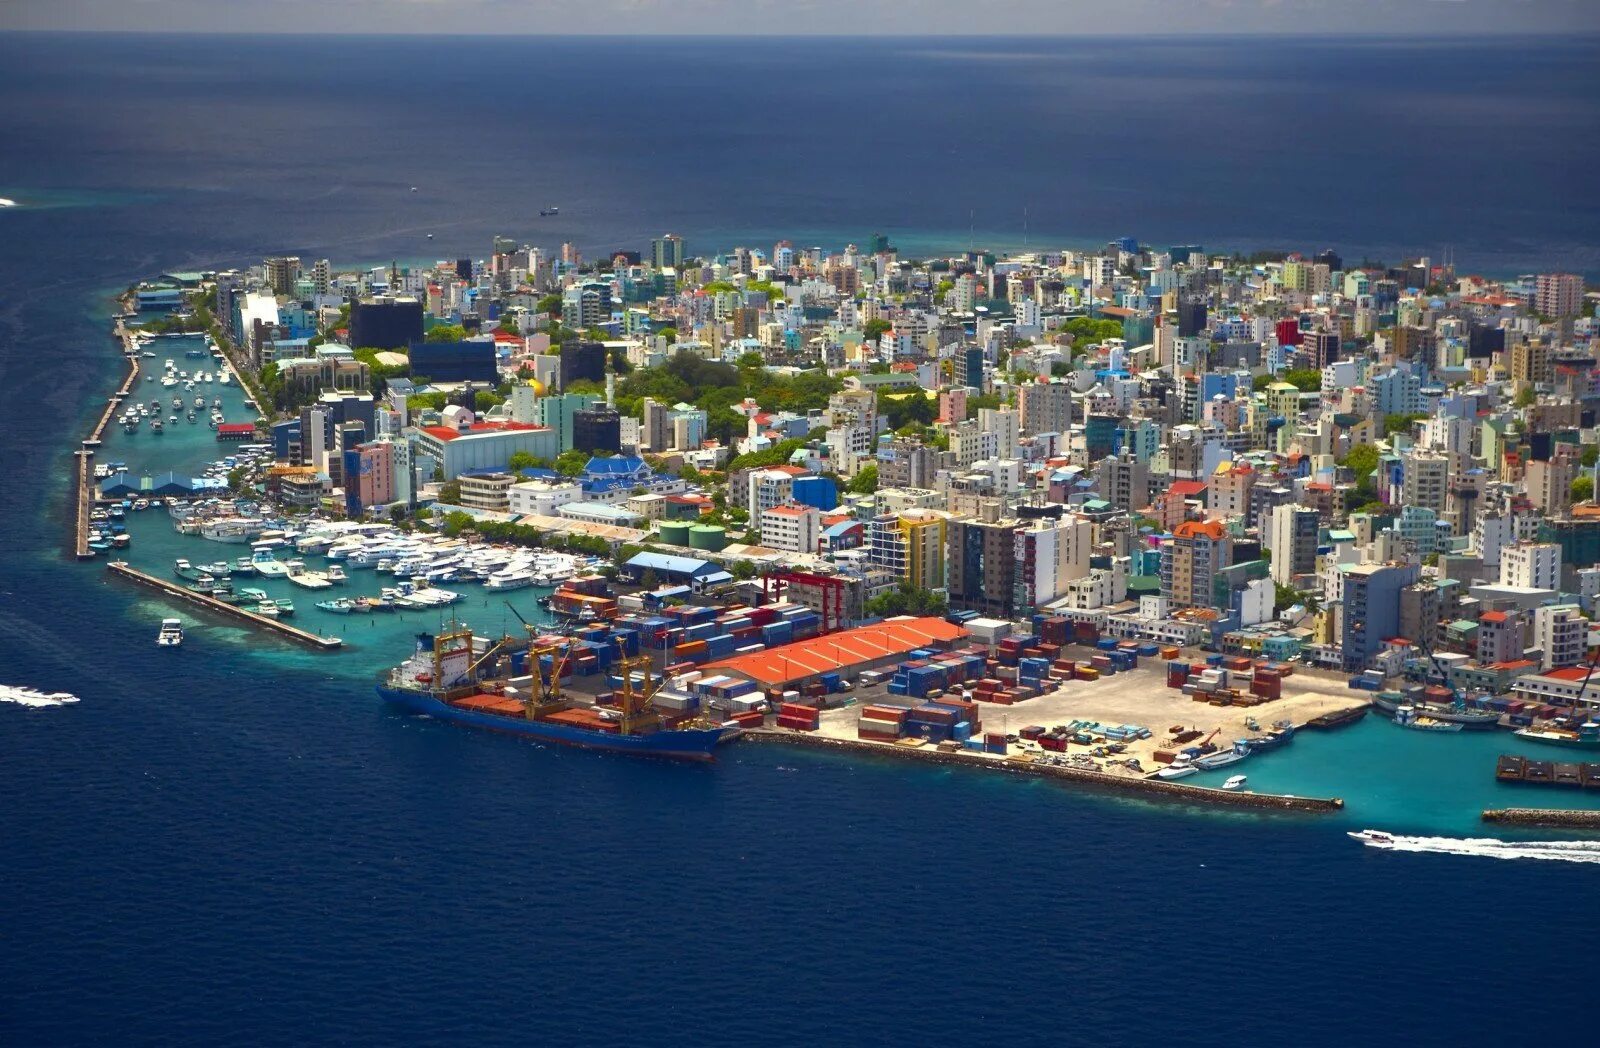 Остров Мале Мальдивы. Столица Мальдивской Республики. Мале город в океане столица Мальдивской Республики. Столица Мальдив - город Мале.. Погода мале